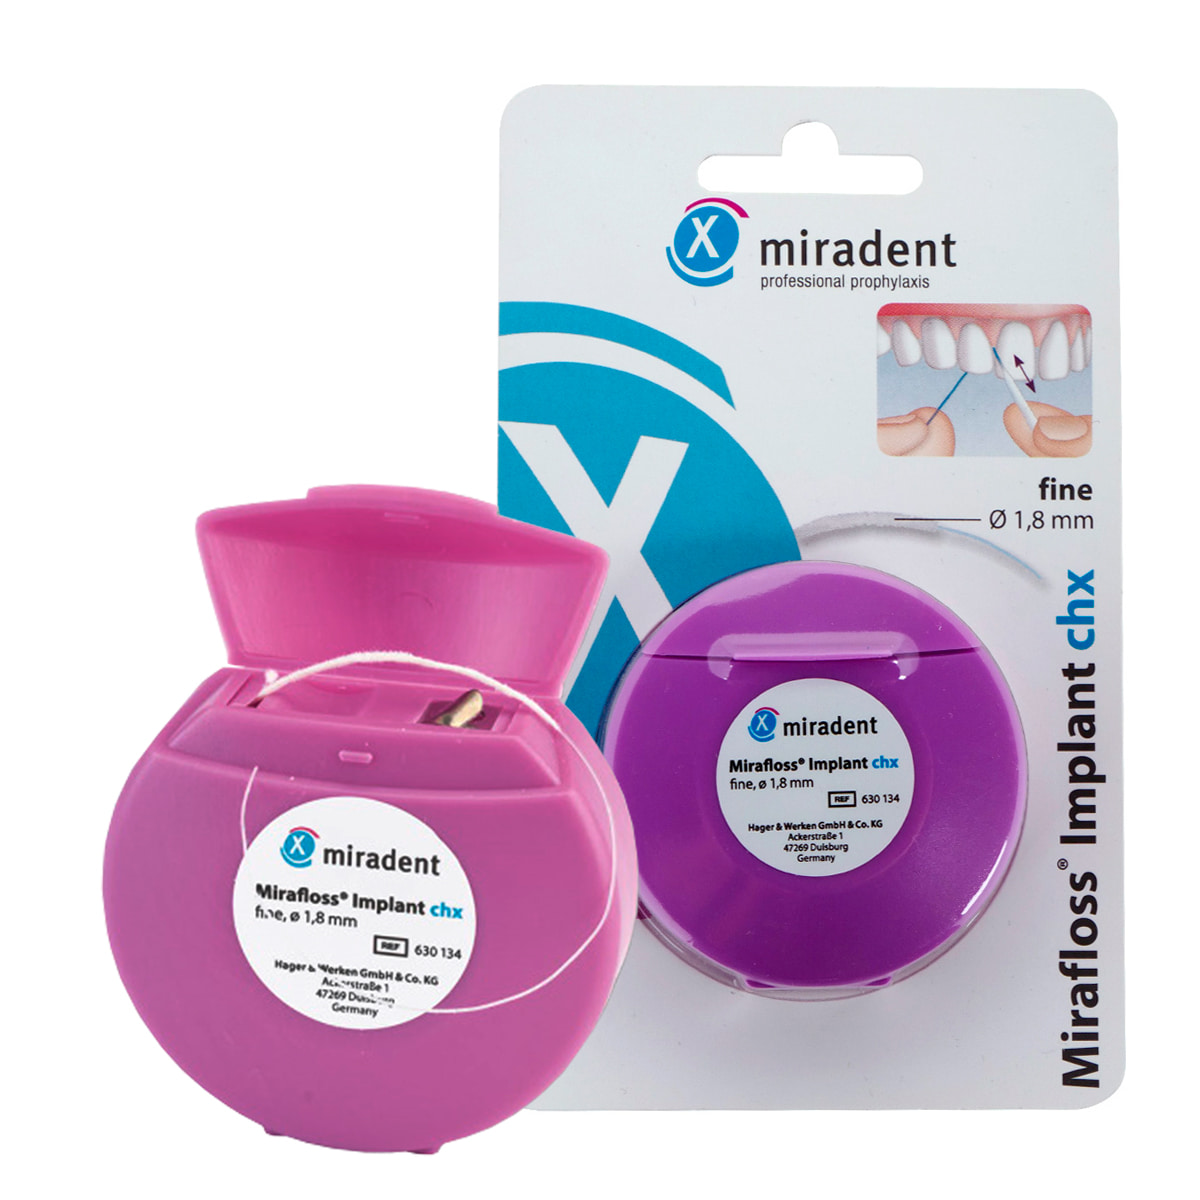 цена Зубная нить miradent Mirafloss Implant chx 1,8 мм для имплантов/брекетов